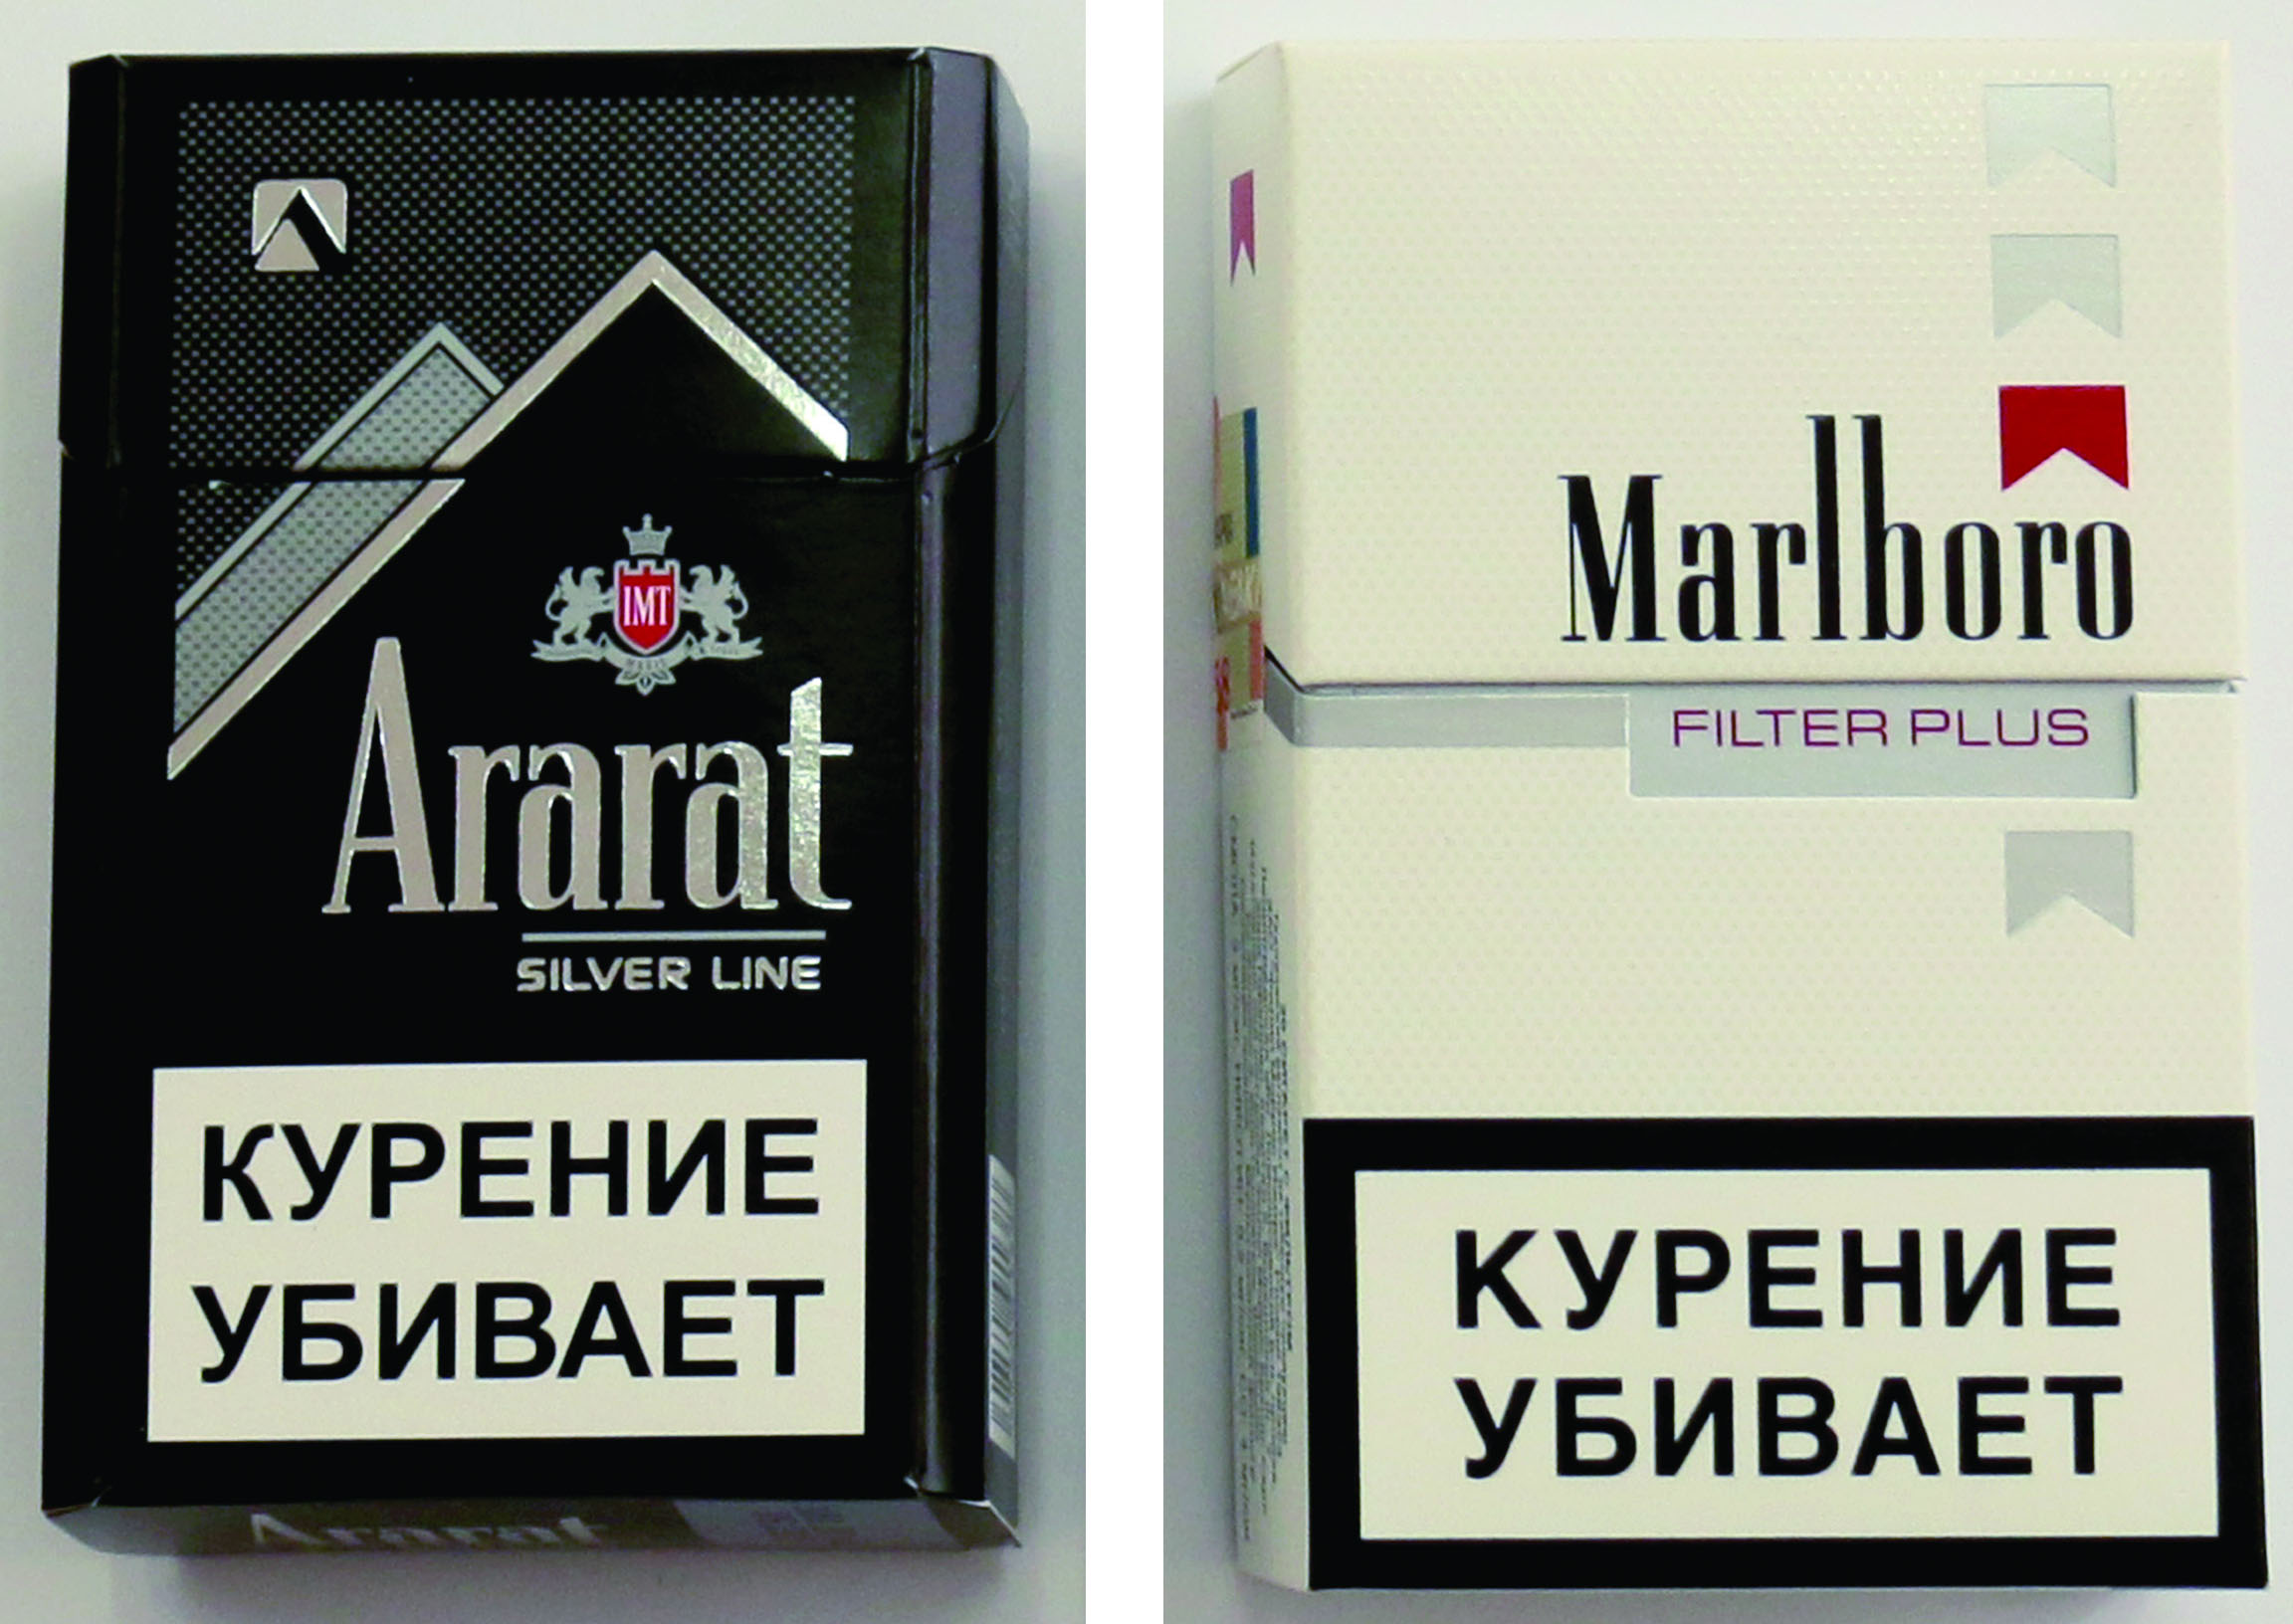 Купить армянские сигареты в интернет. Marlboro сигареты Armenia. Сигареты Арарат Сильвер. Армянские сигареты Мальборо. Арарат сигареты Армения.